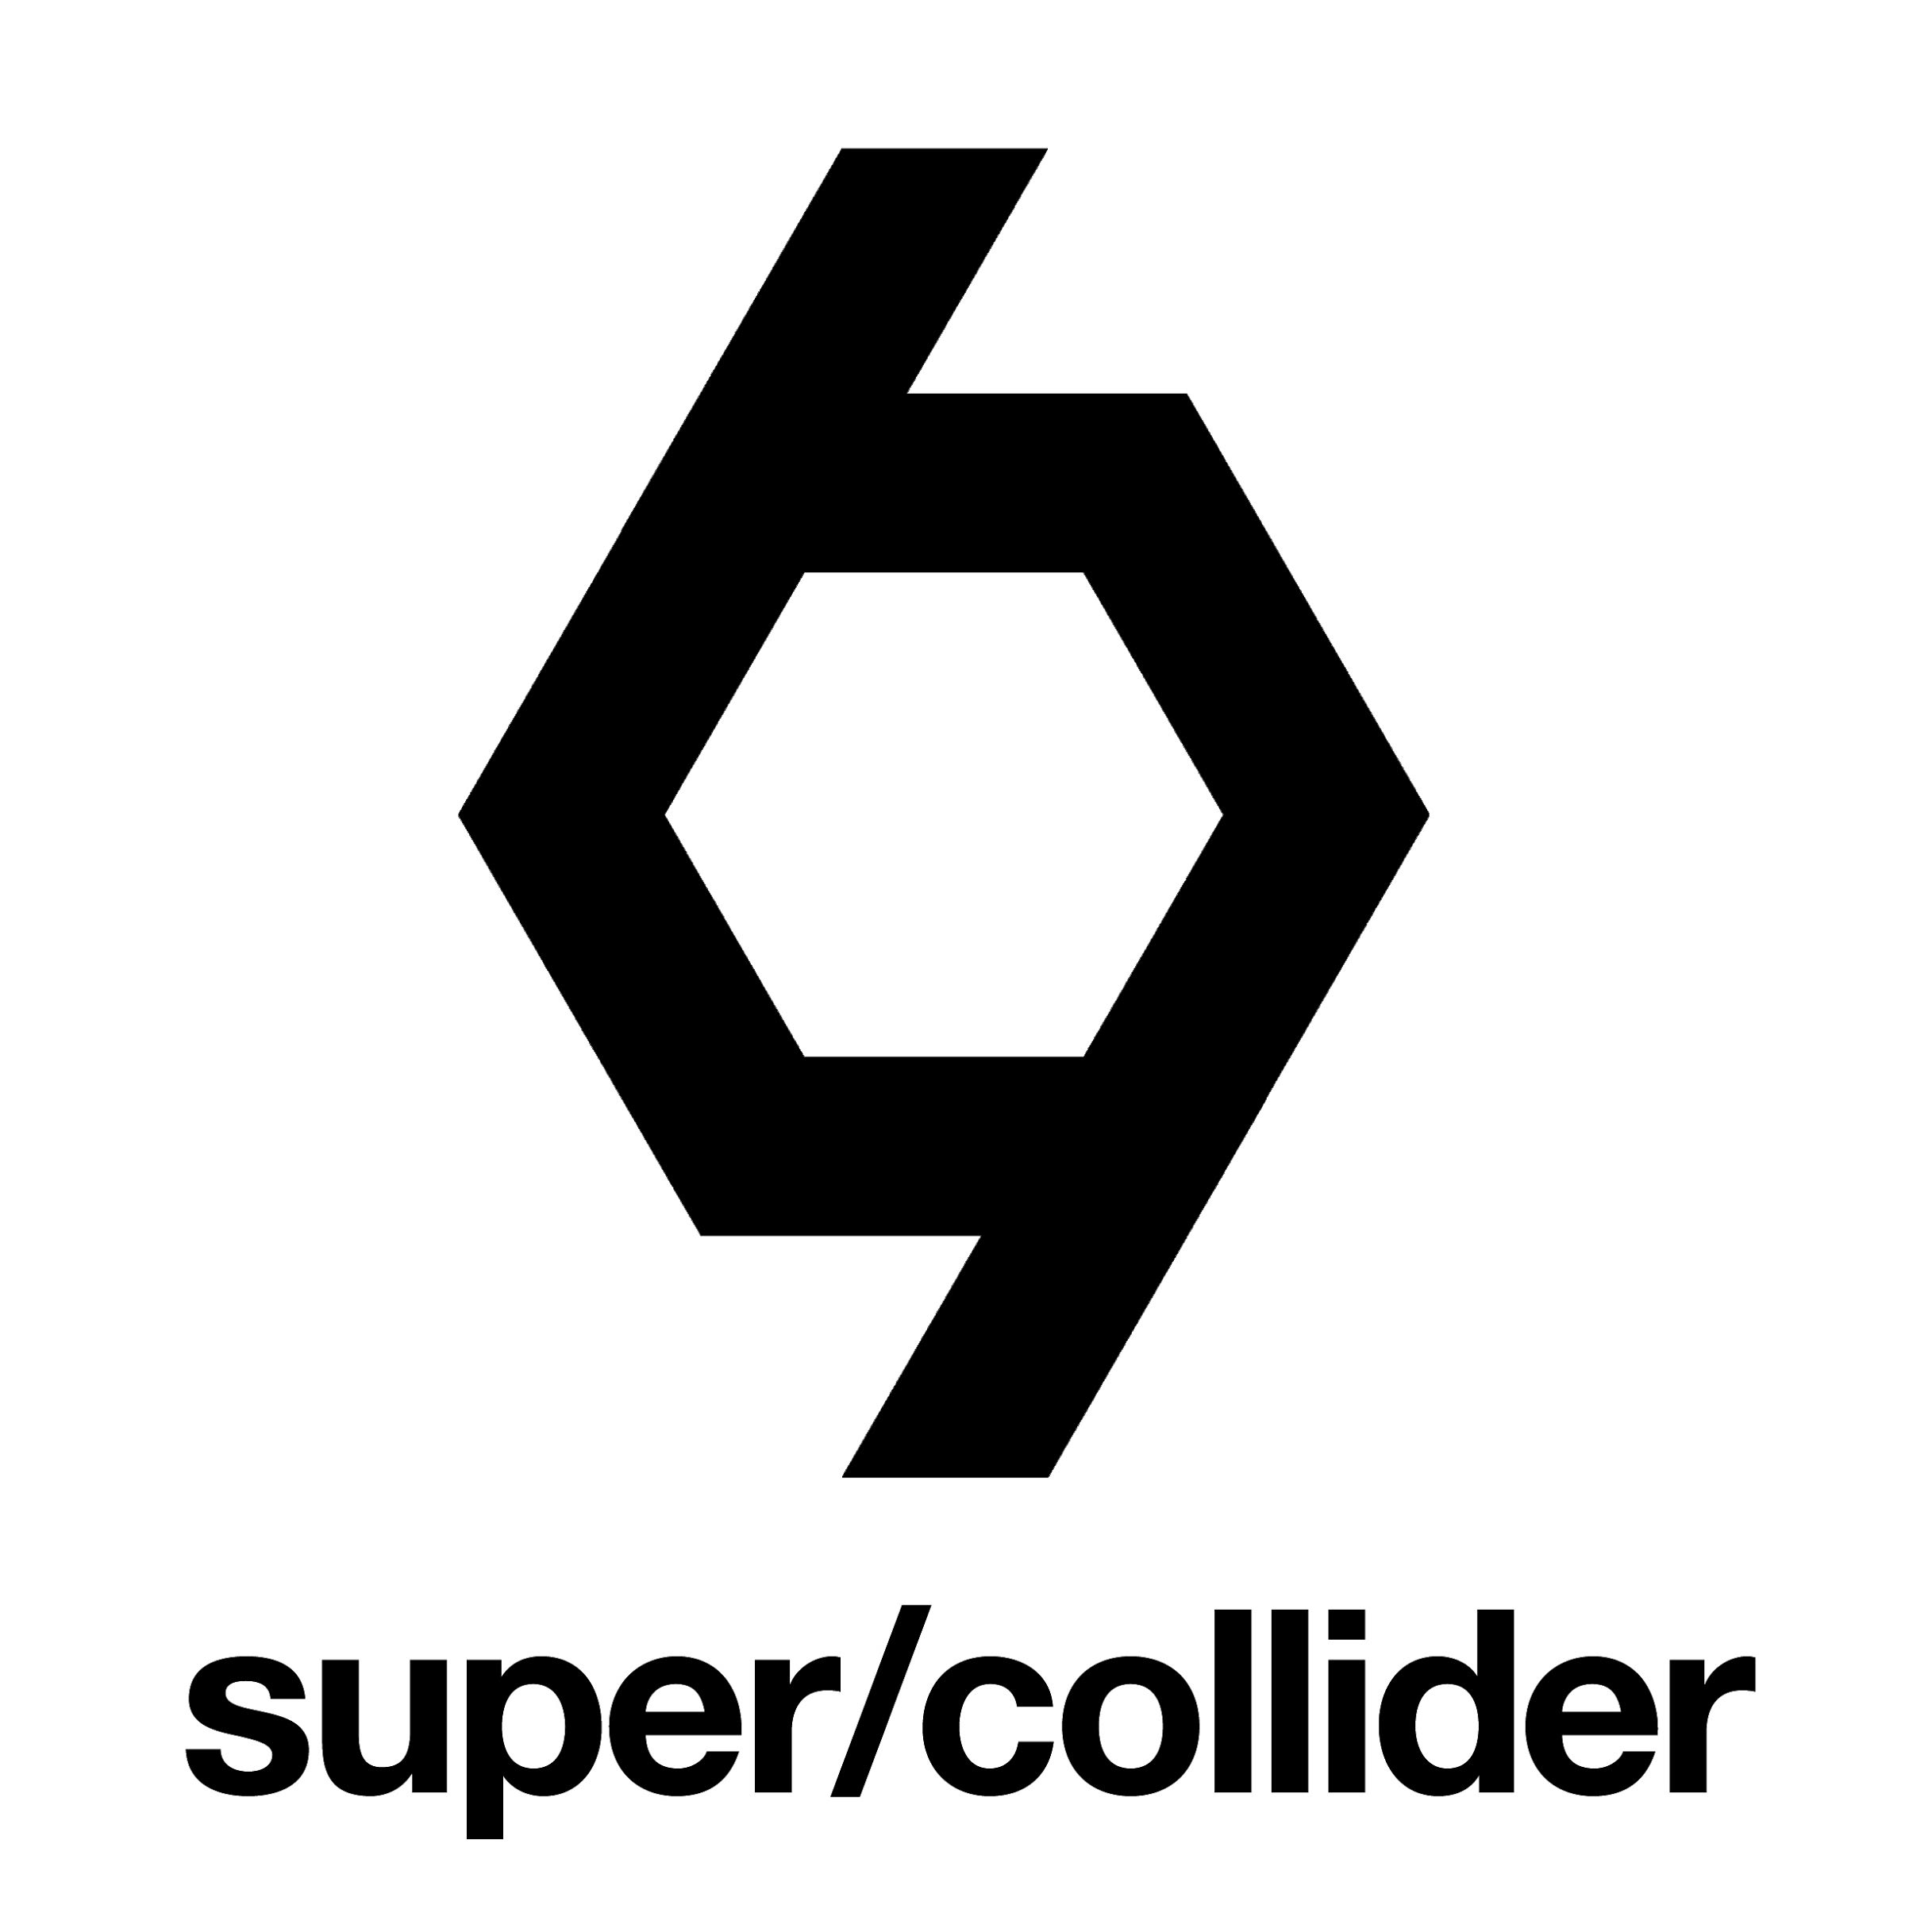 super/collider